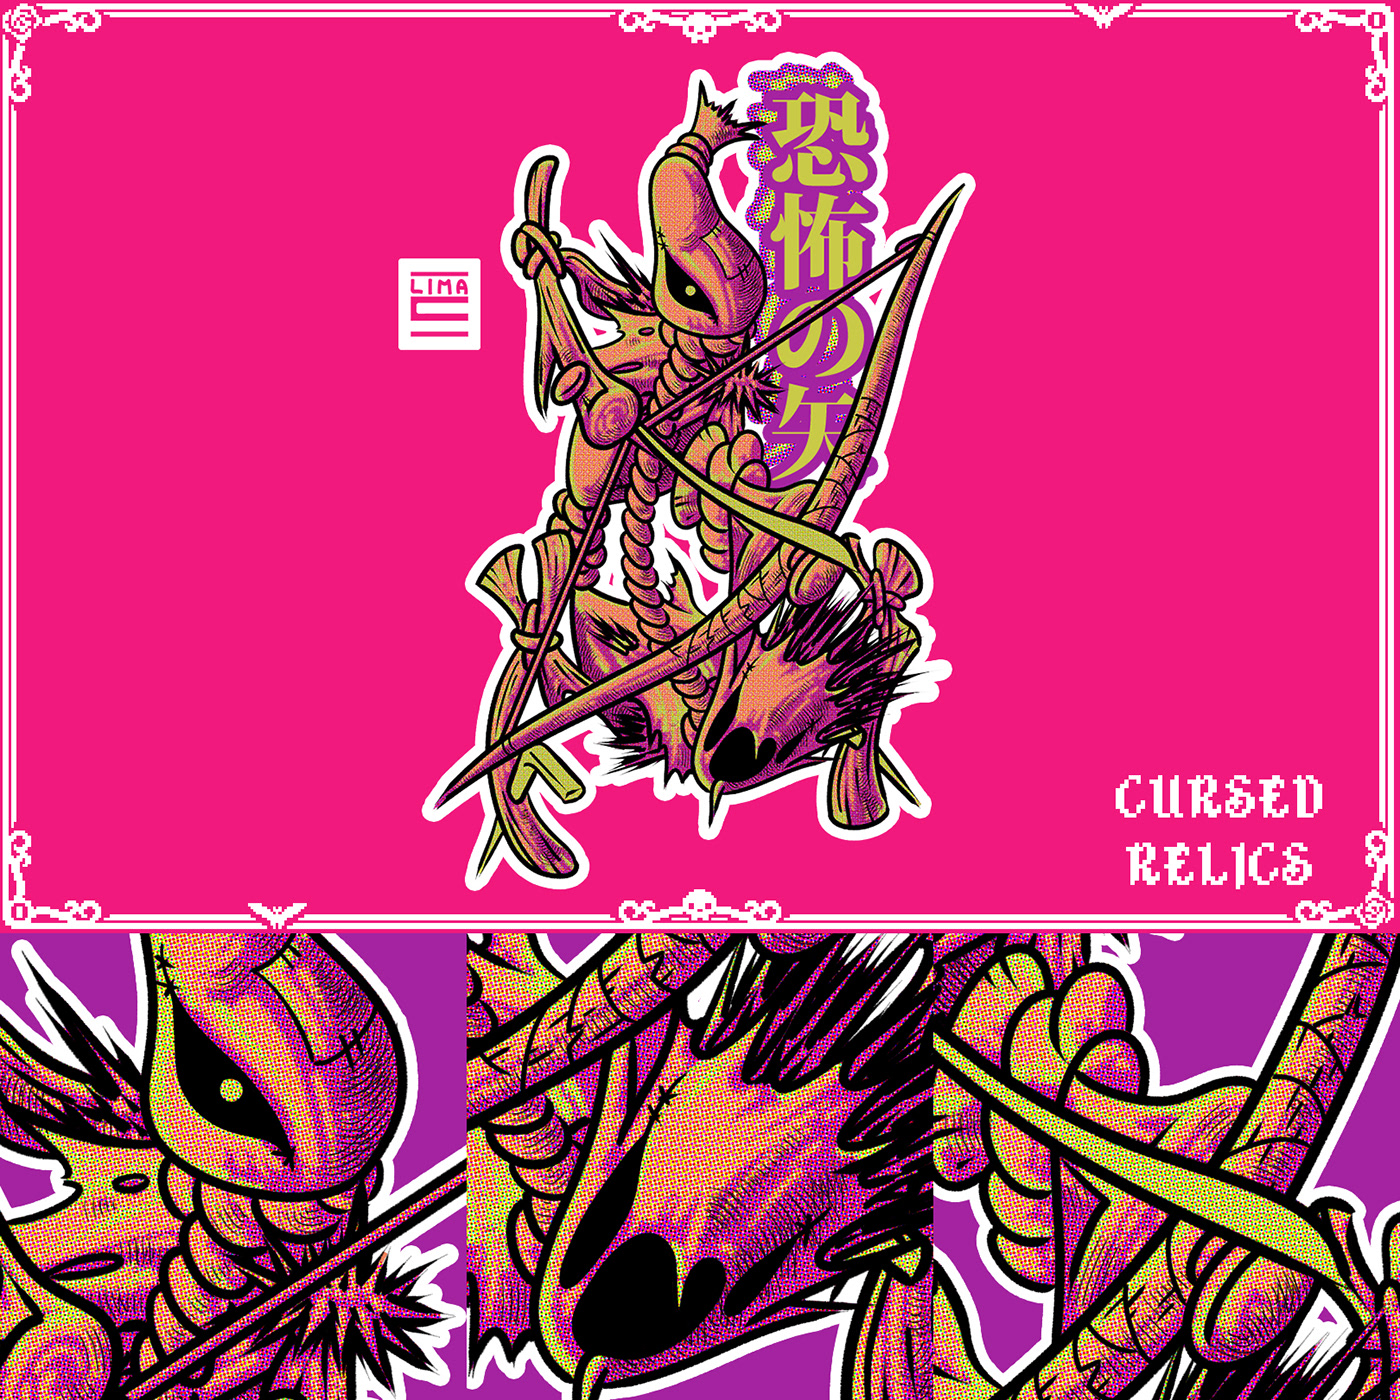 characterdesign creaturedesign creatures MonsterDesign monsters rpg stickers